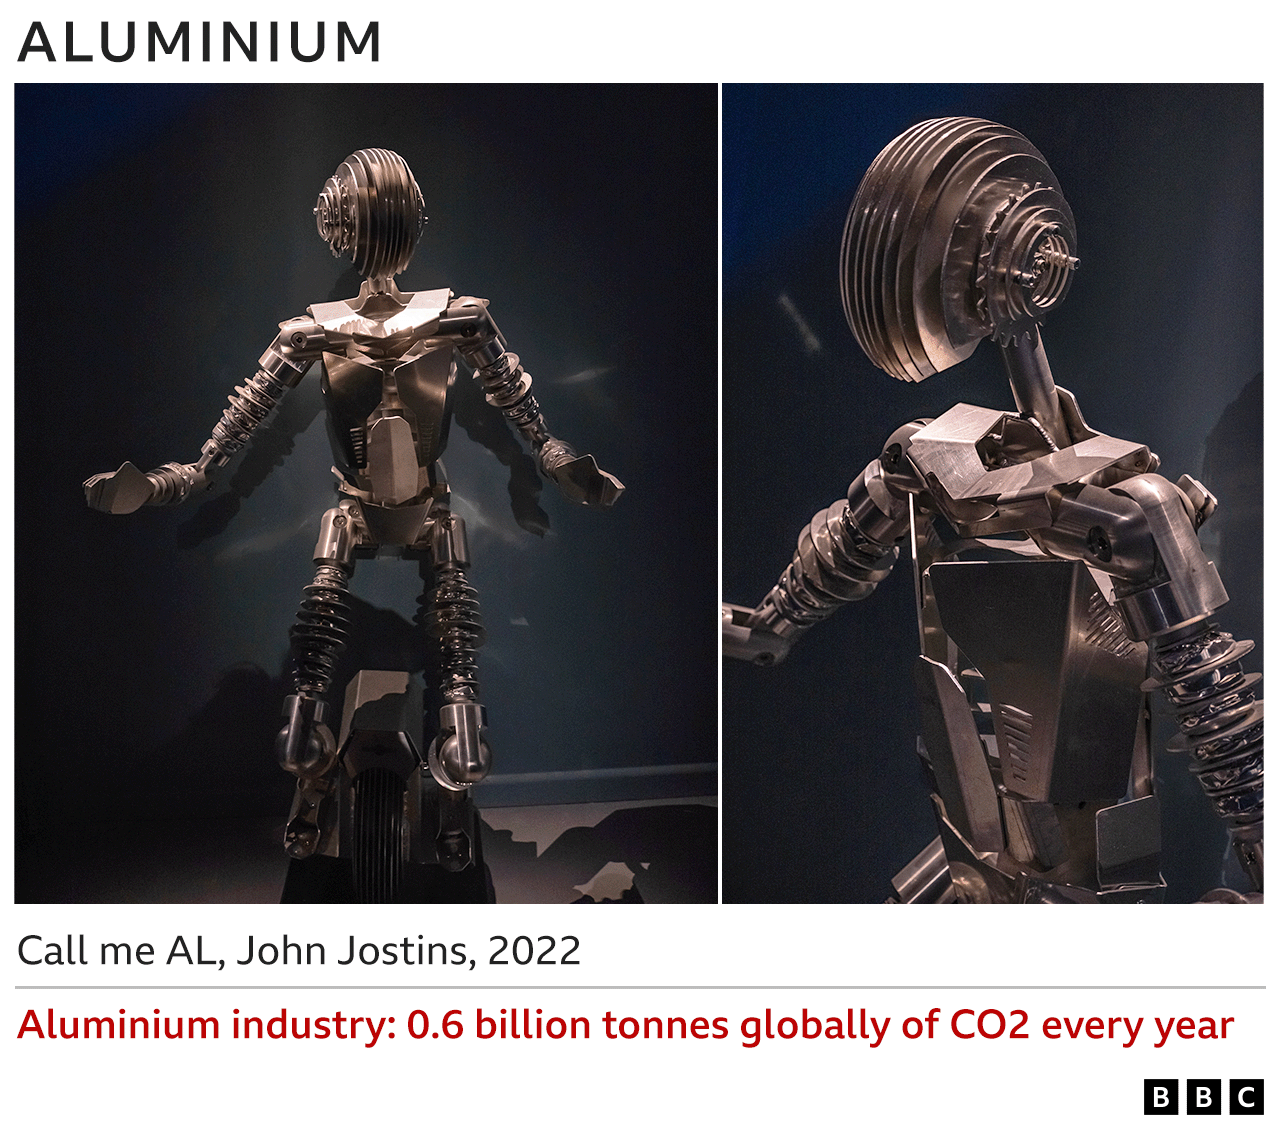 Изображения алюминиевой скульптуры - Call me AL, John Jostins, 2022 - Алюминиевая промышленность ежегодно выбрасывает 0,6 млрд тонн CO2